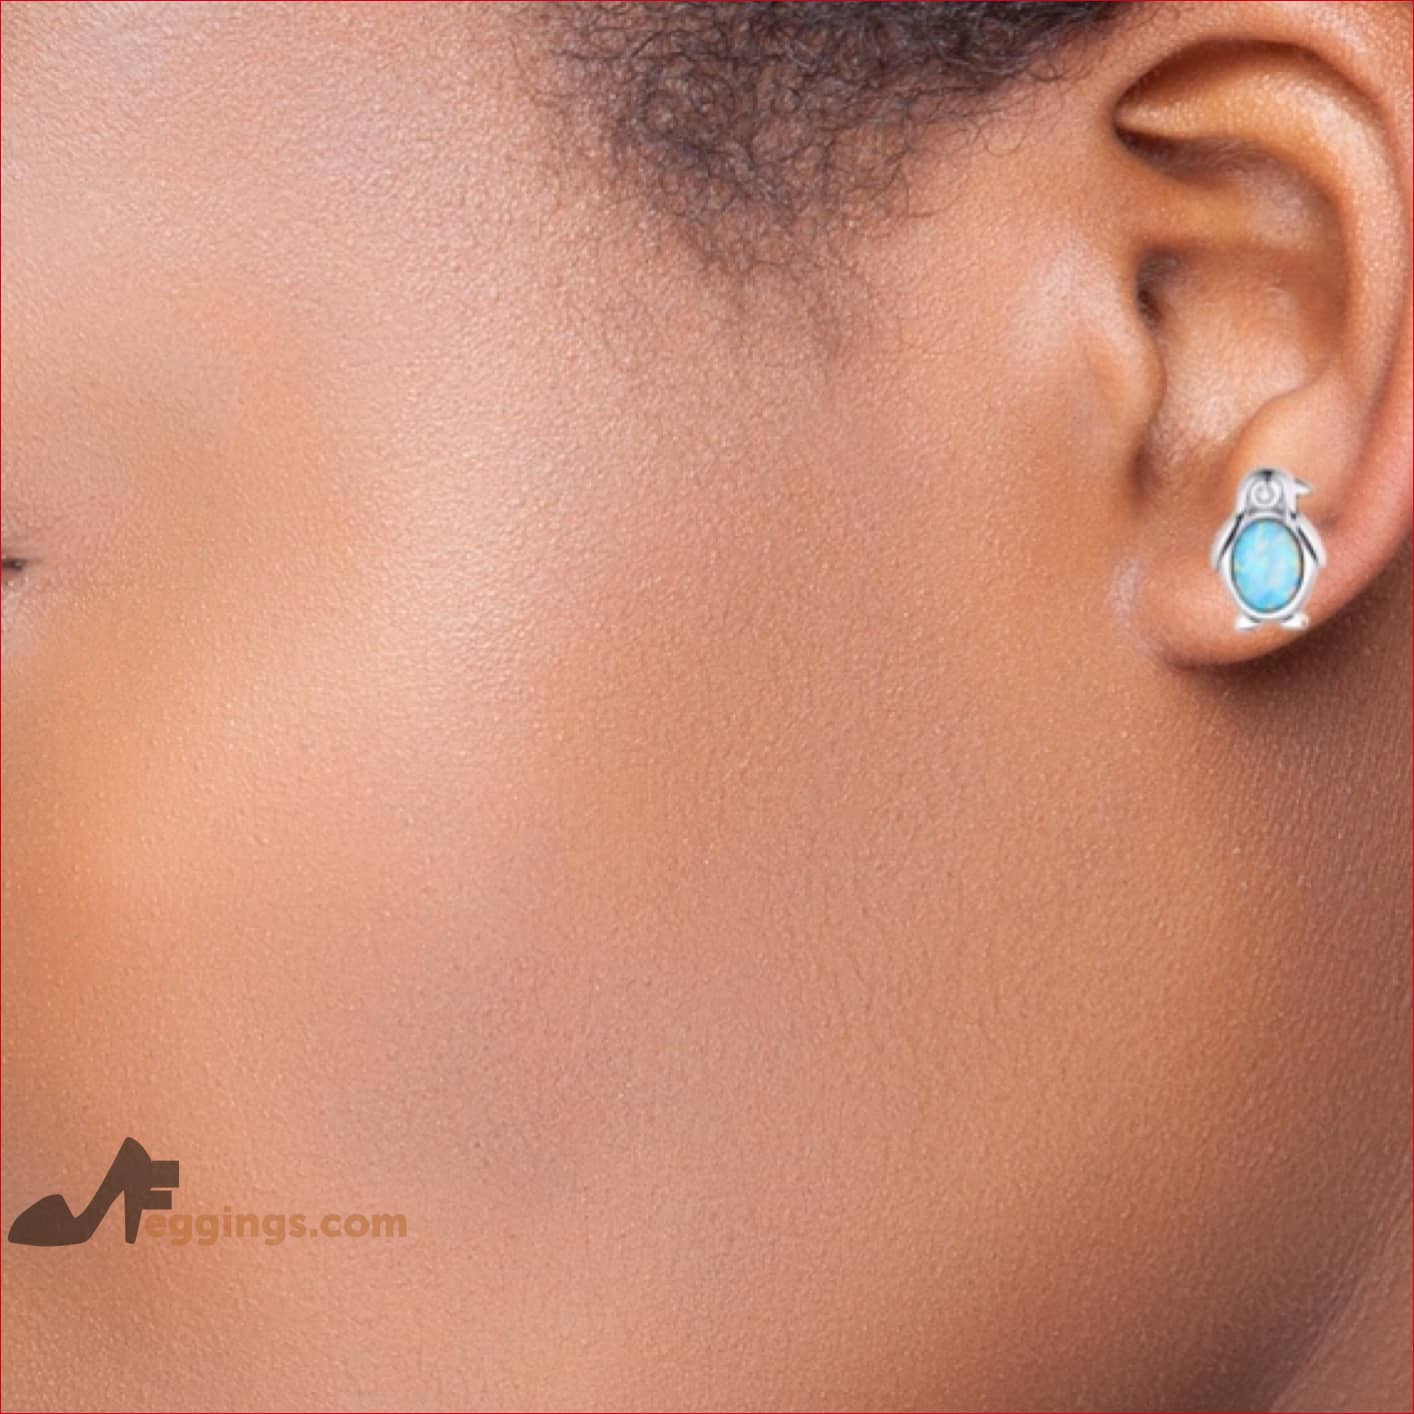 Opal Penguin Stud Earrings Hypoallergenic 925 Sterling Silver